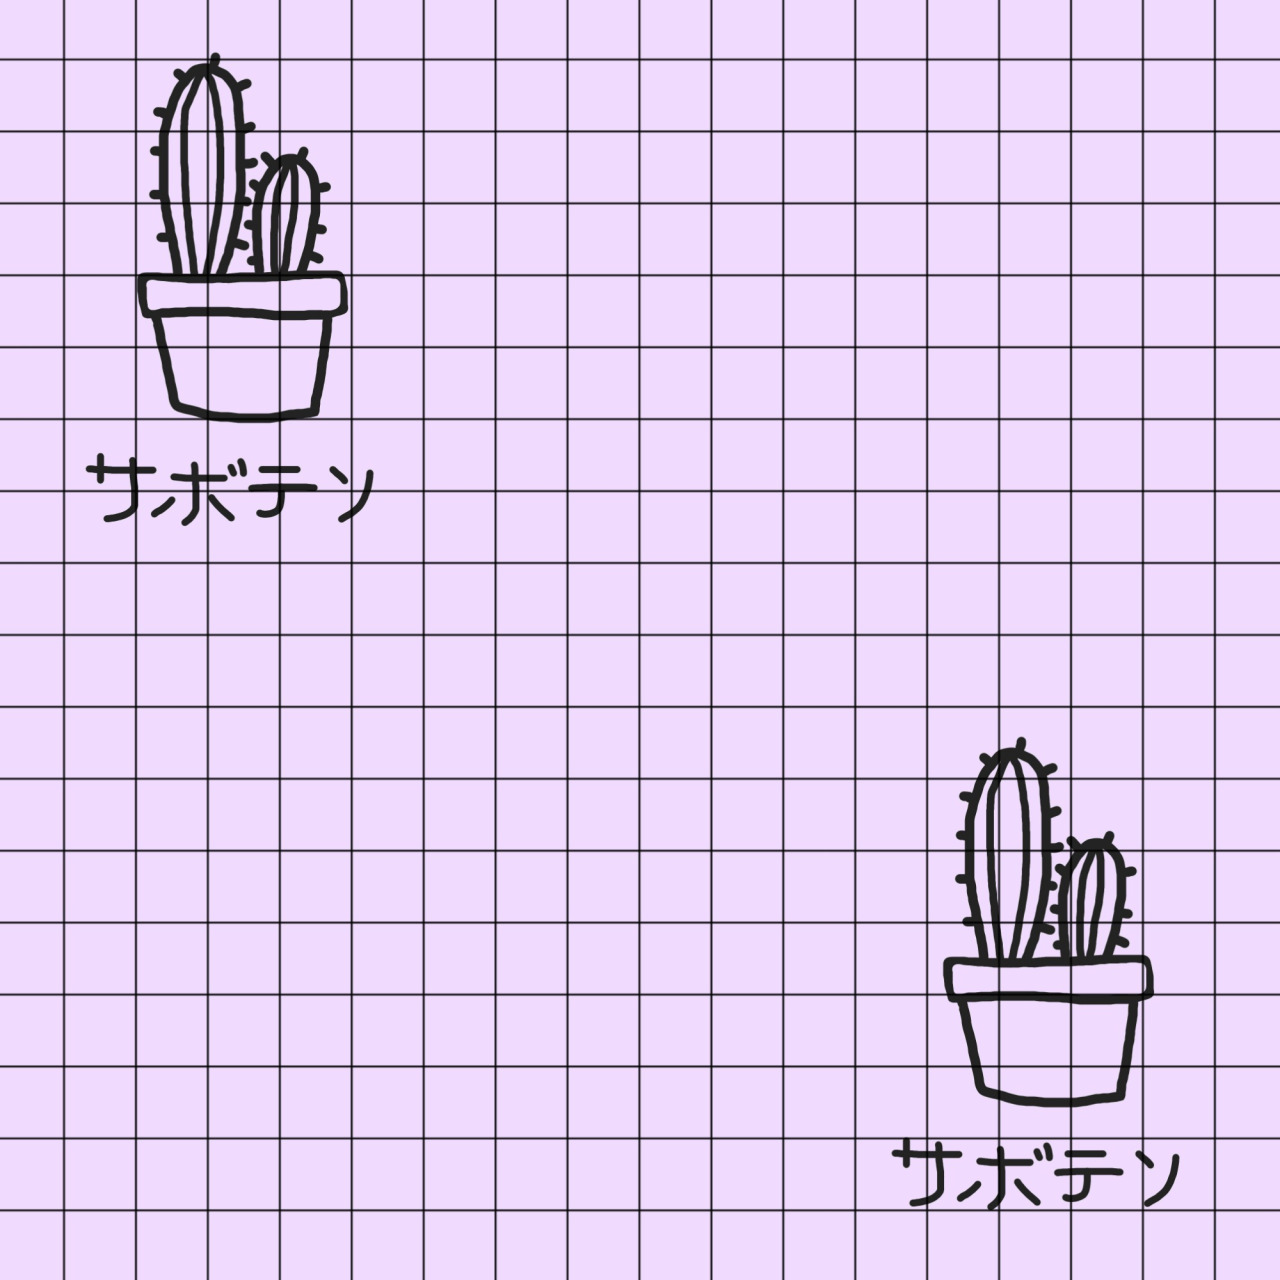 Lilac Background Black Grid Cacti Japanese Writing Cactus